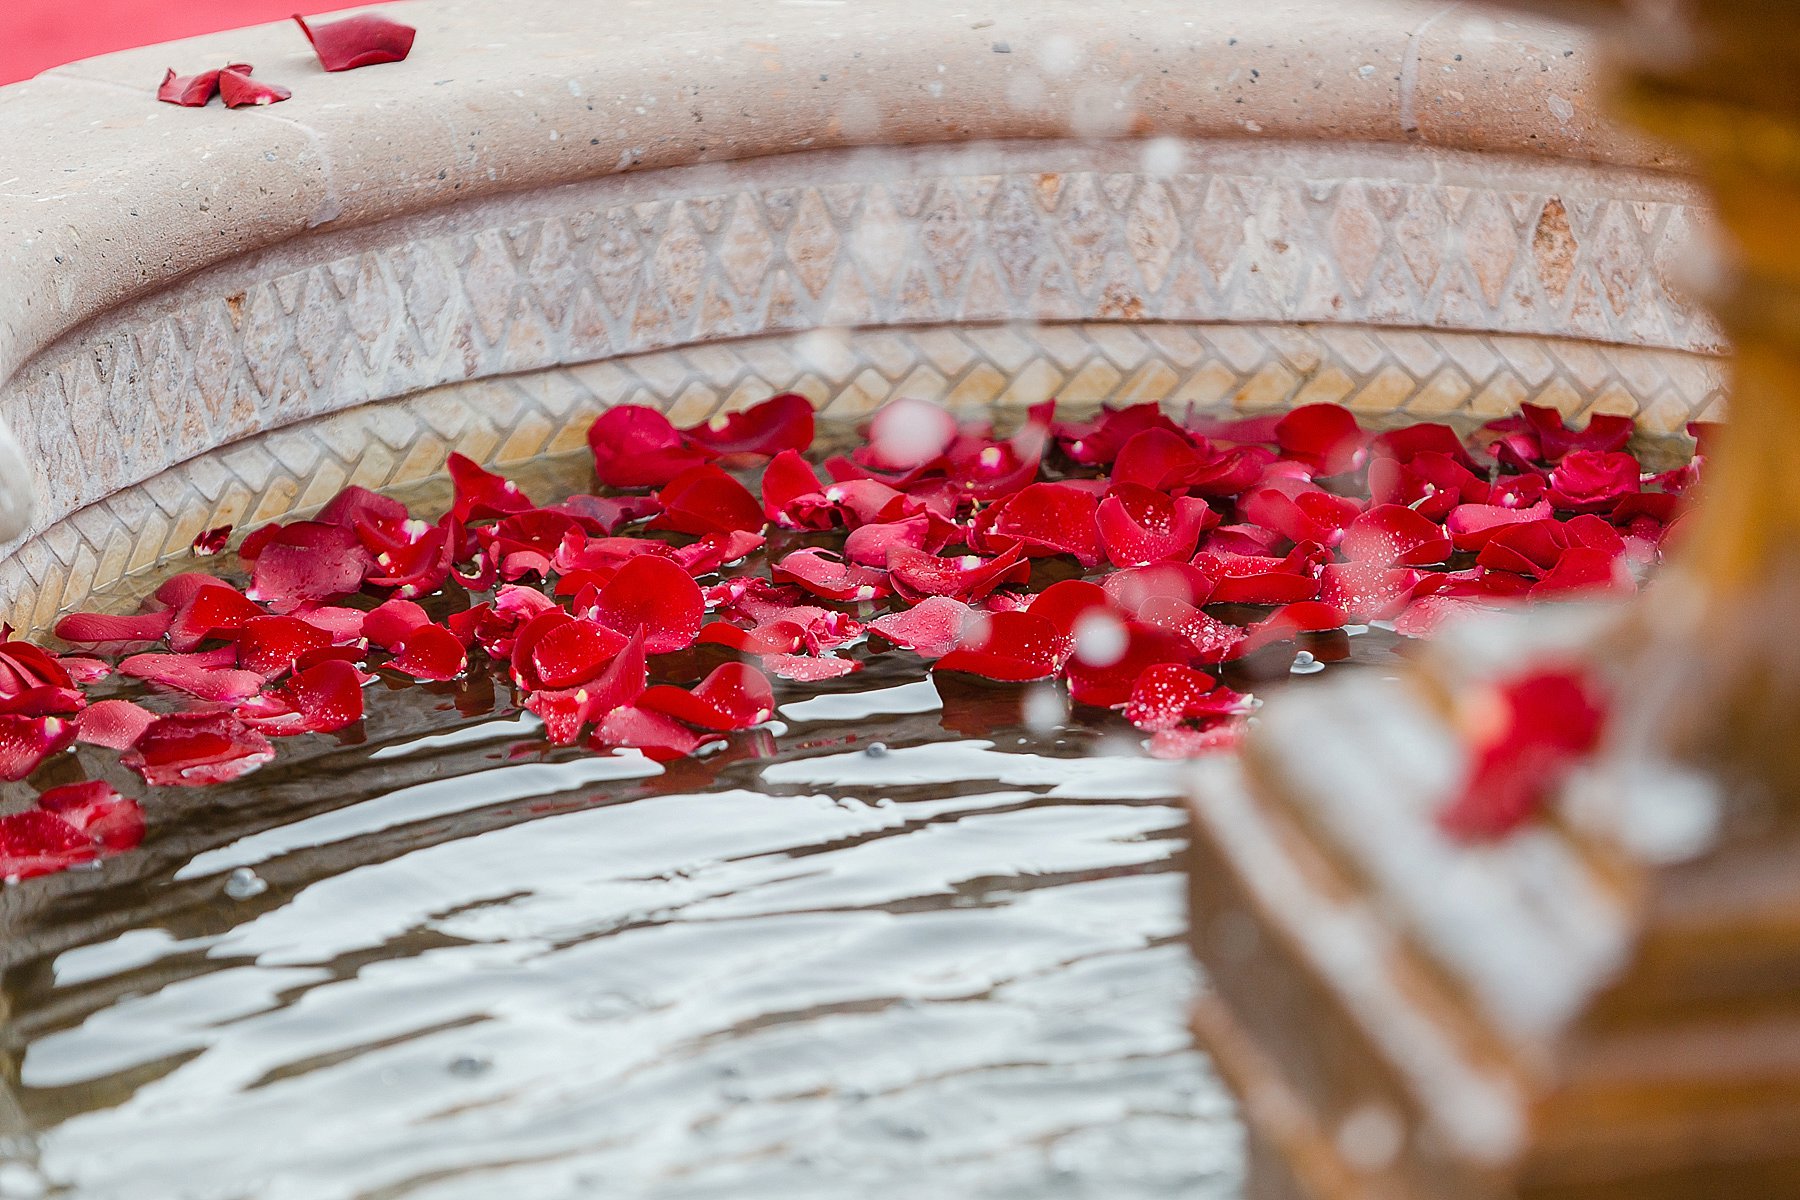 Villa Siena Wedding Ceremony Fountain Floating Petals Photo